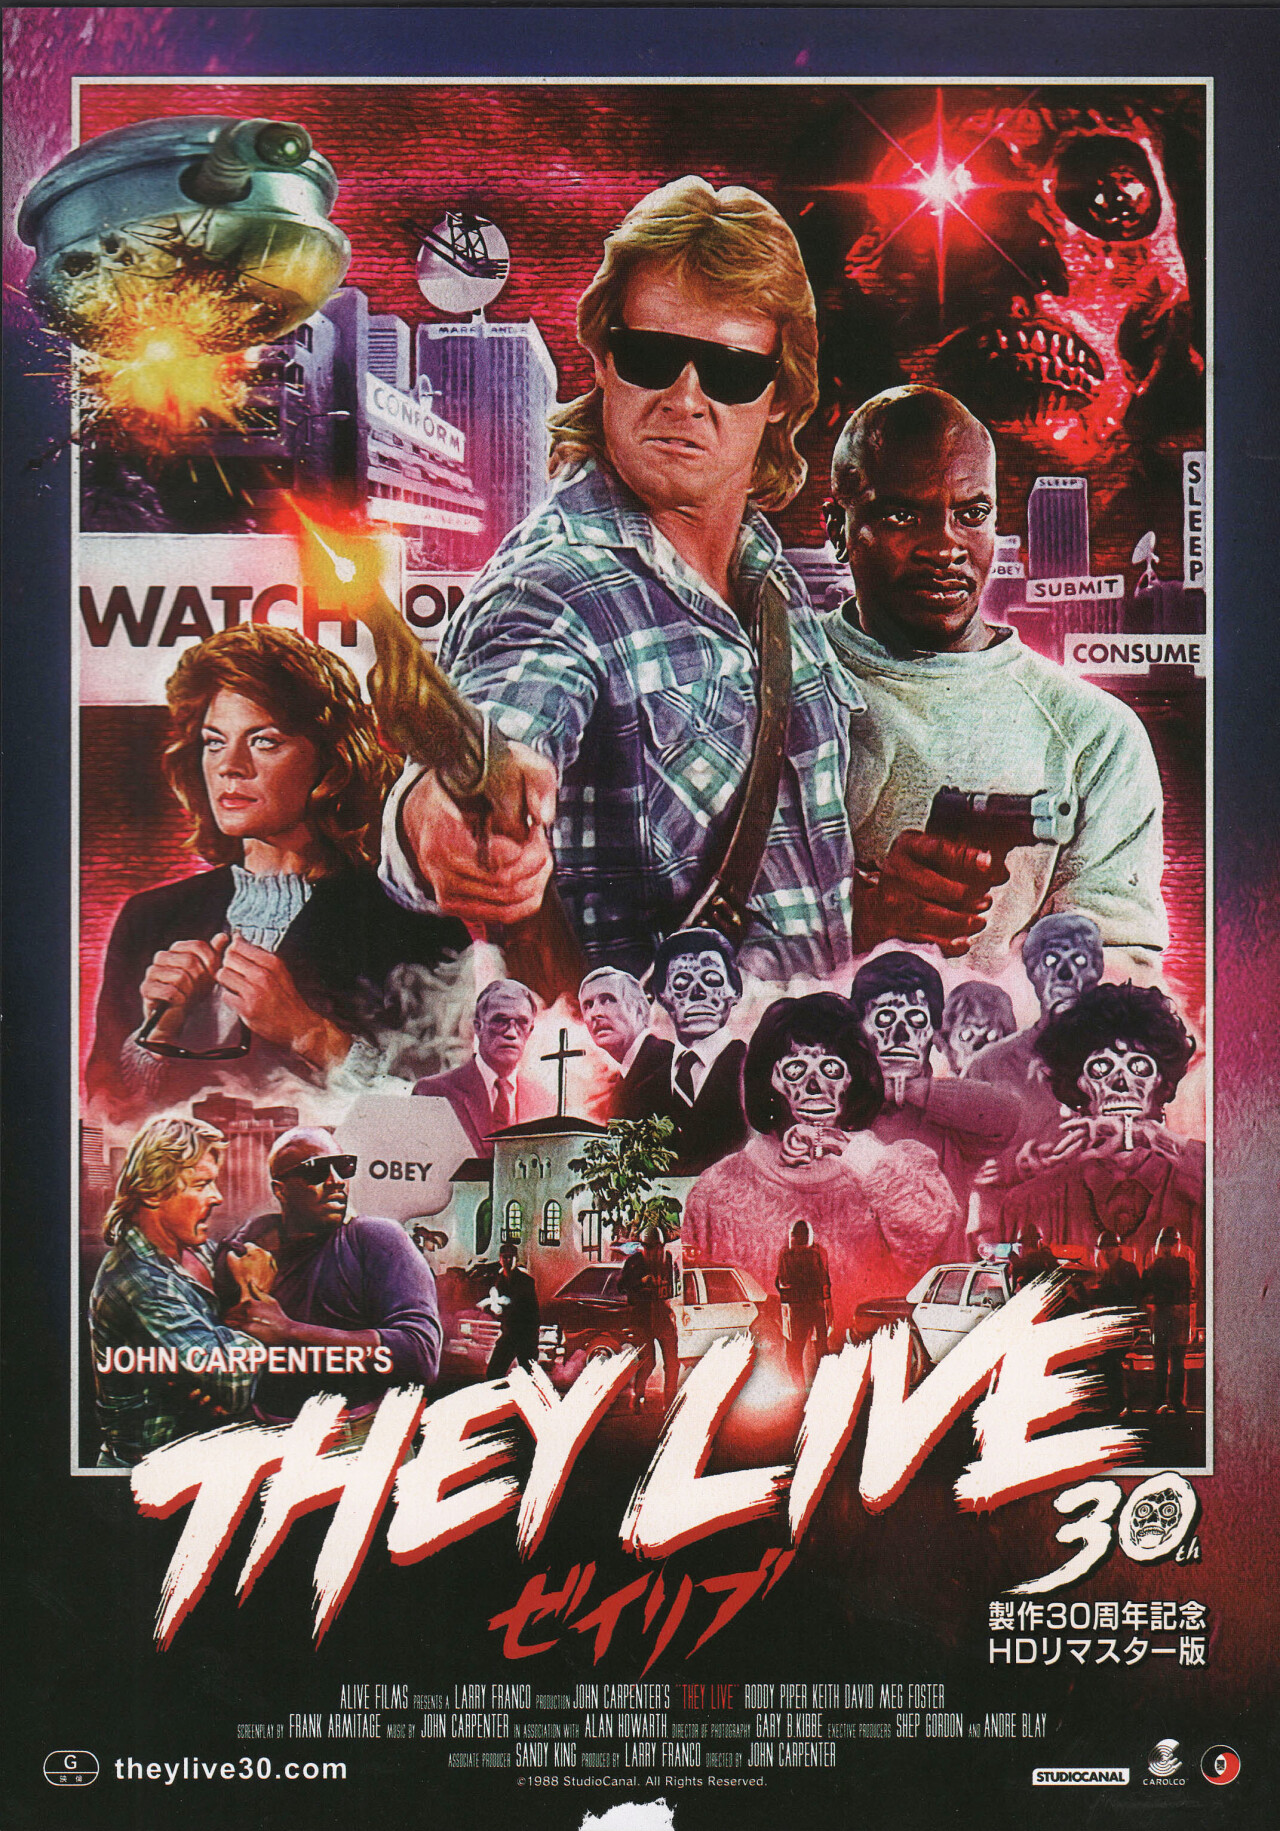 Чужие среди нас (They Live, 1988), режиссёр Джон Карпентер, японский постер к фильму (ужасы, 2018)